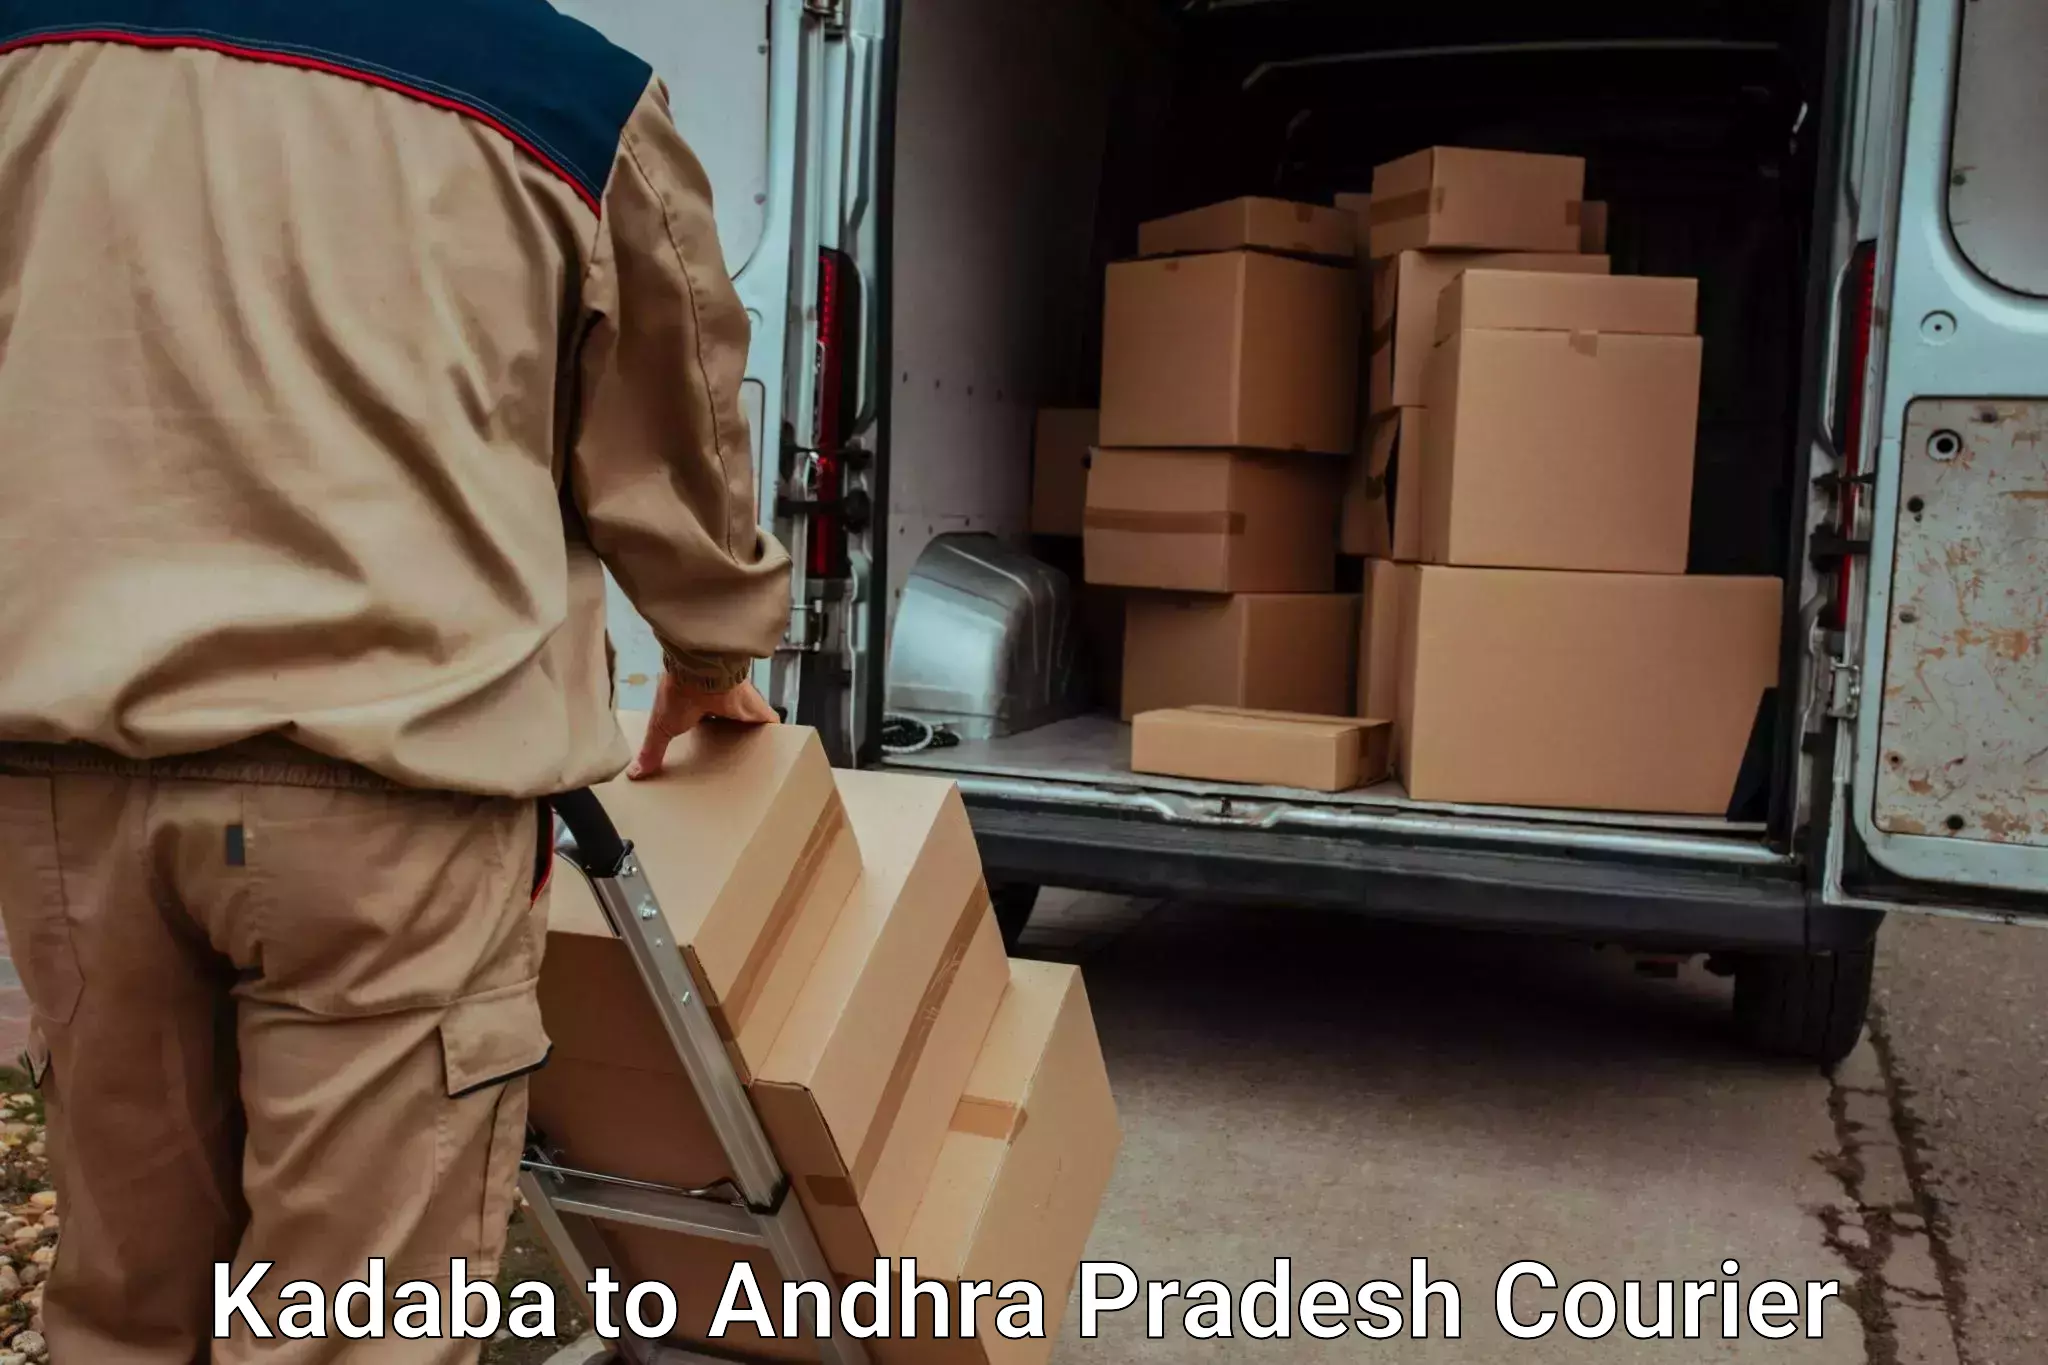 Furniture moving experts Kadaba to Andhra Pradesh